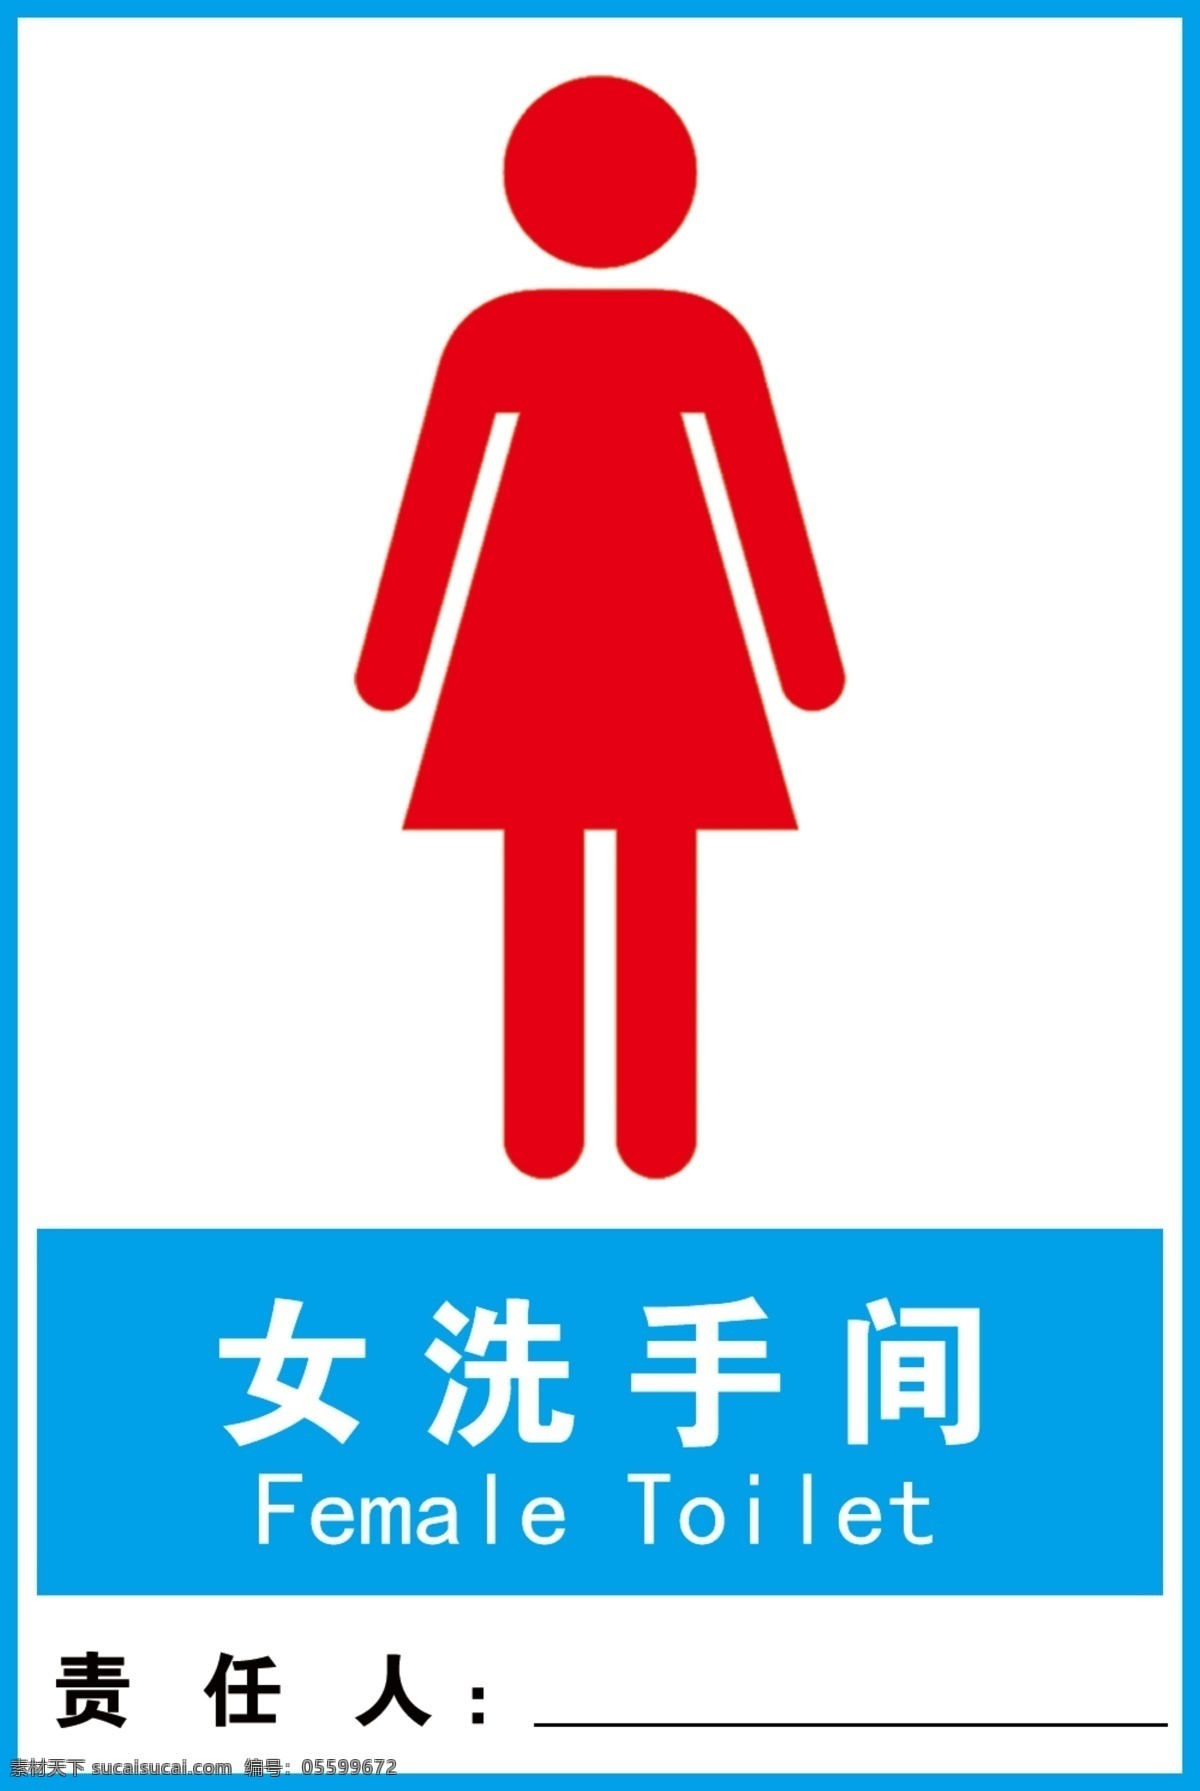 女洗手间图片 女 洗手间 厕所 责任牌 厕所标识 分层